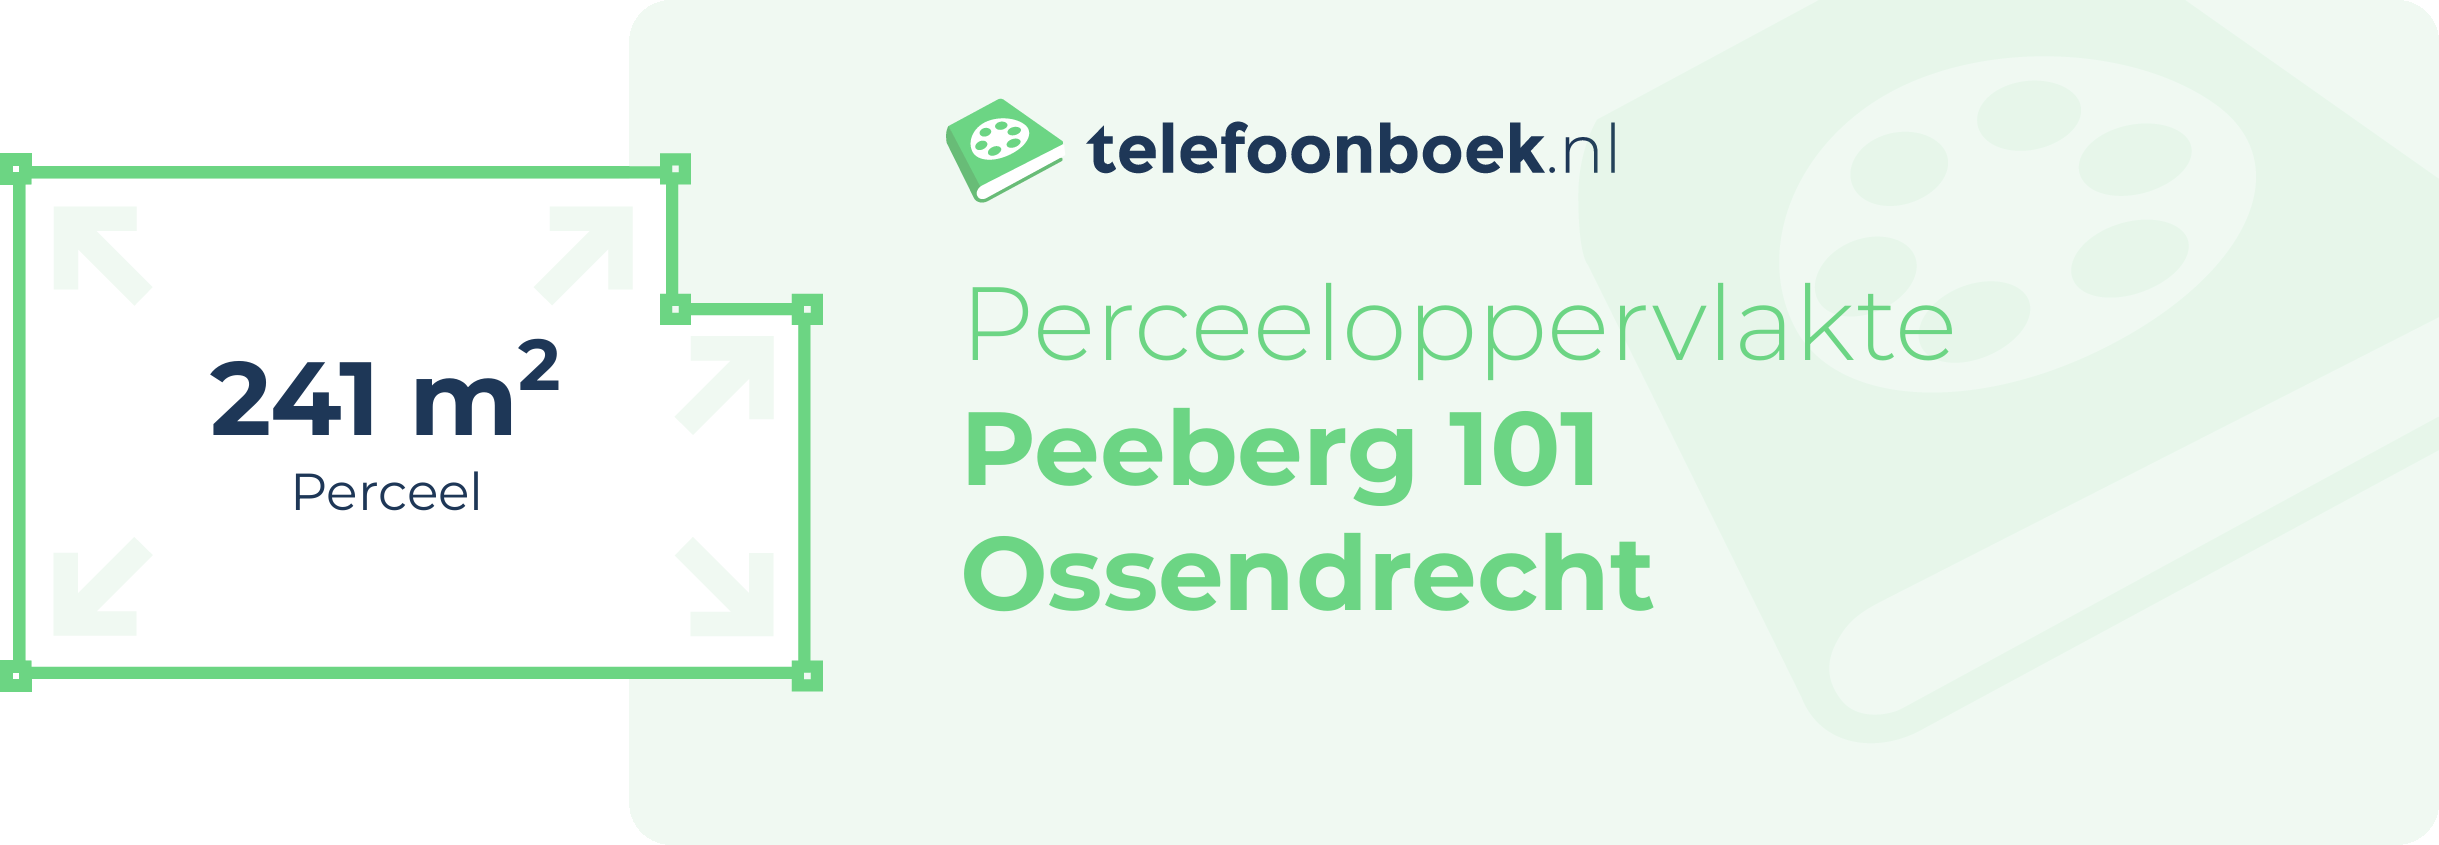 Perceeloppervlakte Peeberg 101 Ossendrecht